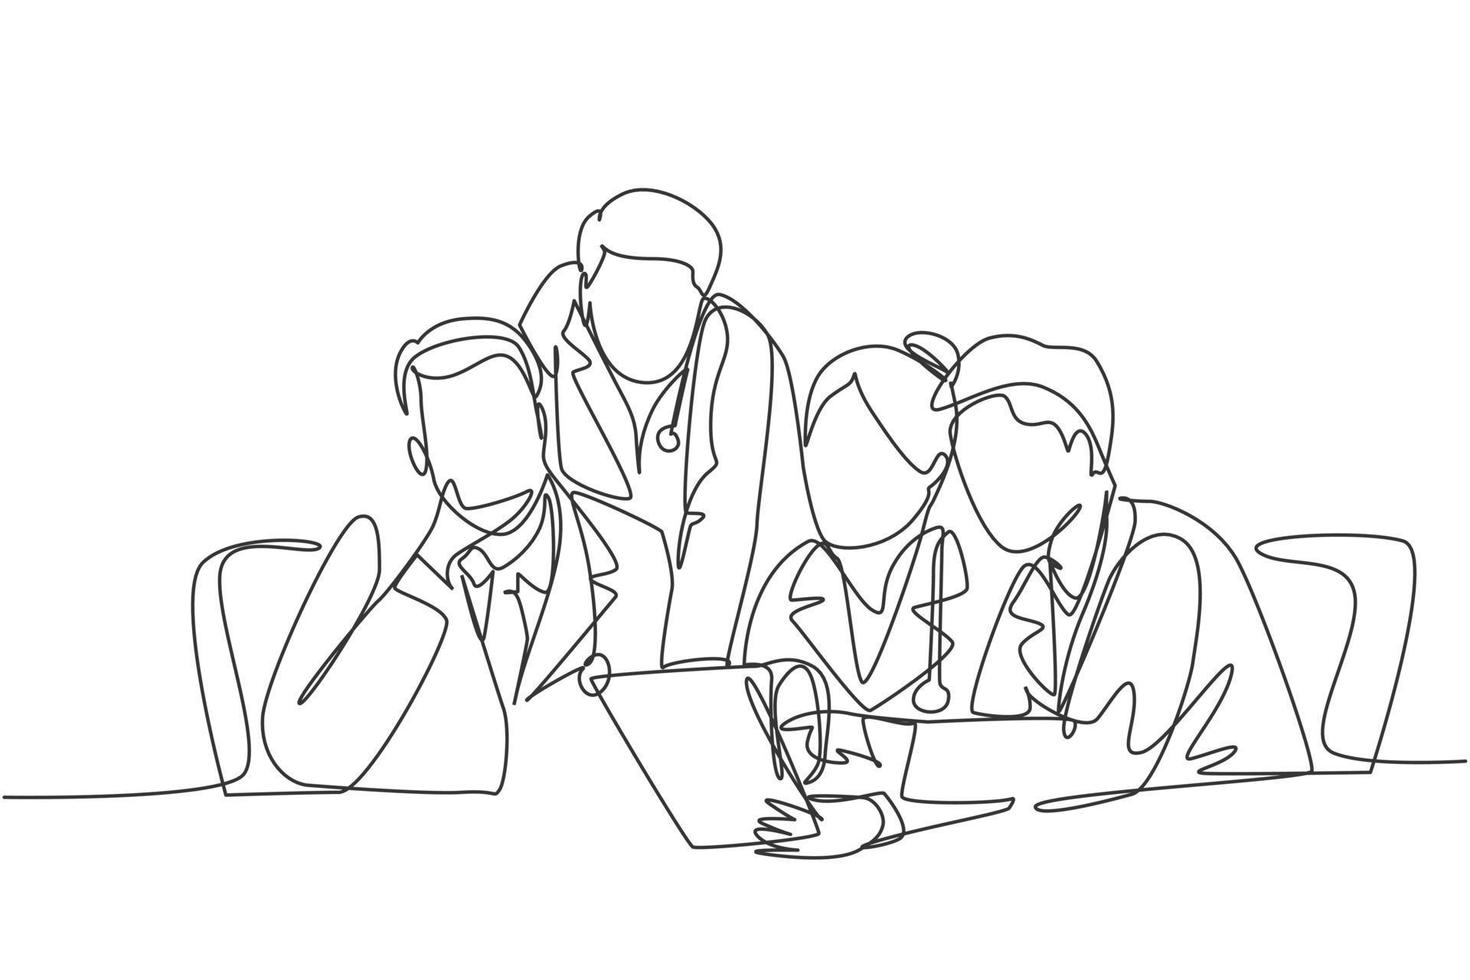 un grupo continuo de dibujo de una sola línea de médicos hombres y mujeres que discuten y diagnostican la enfermedad del paciente en la habitación del hospital. Ilustración de vector de diseño de dibujo de línea única de concepto de reunión médica